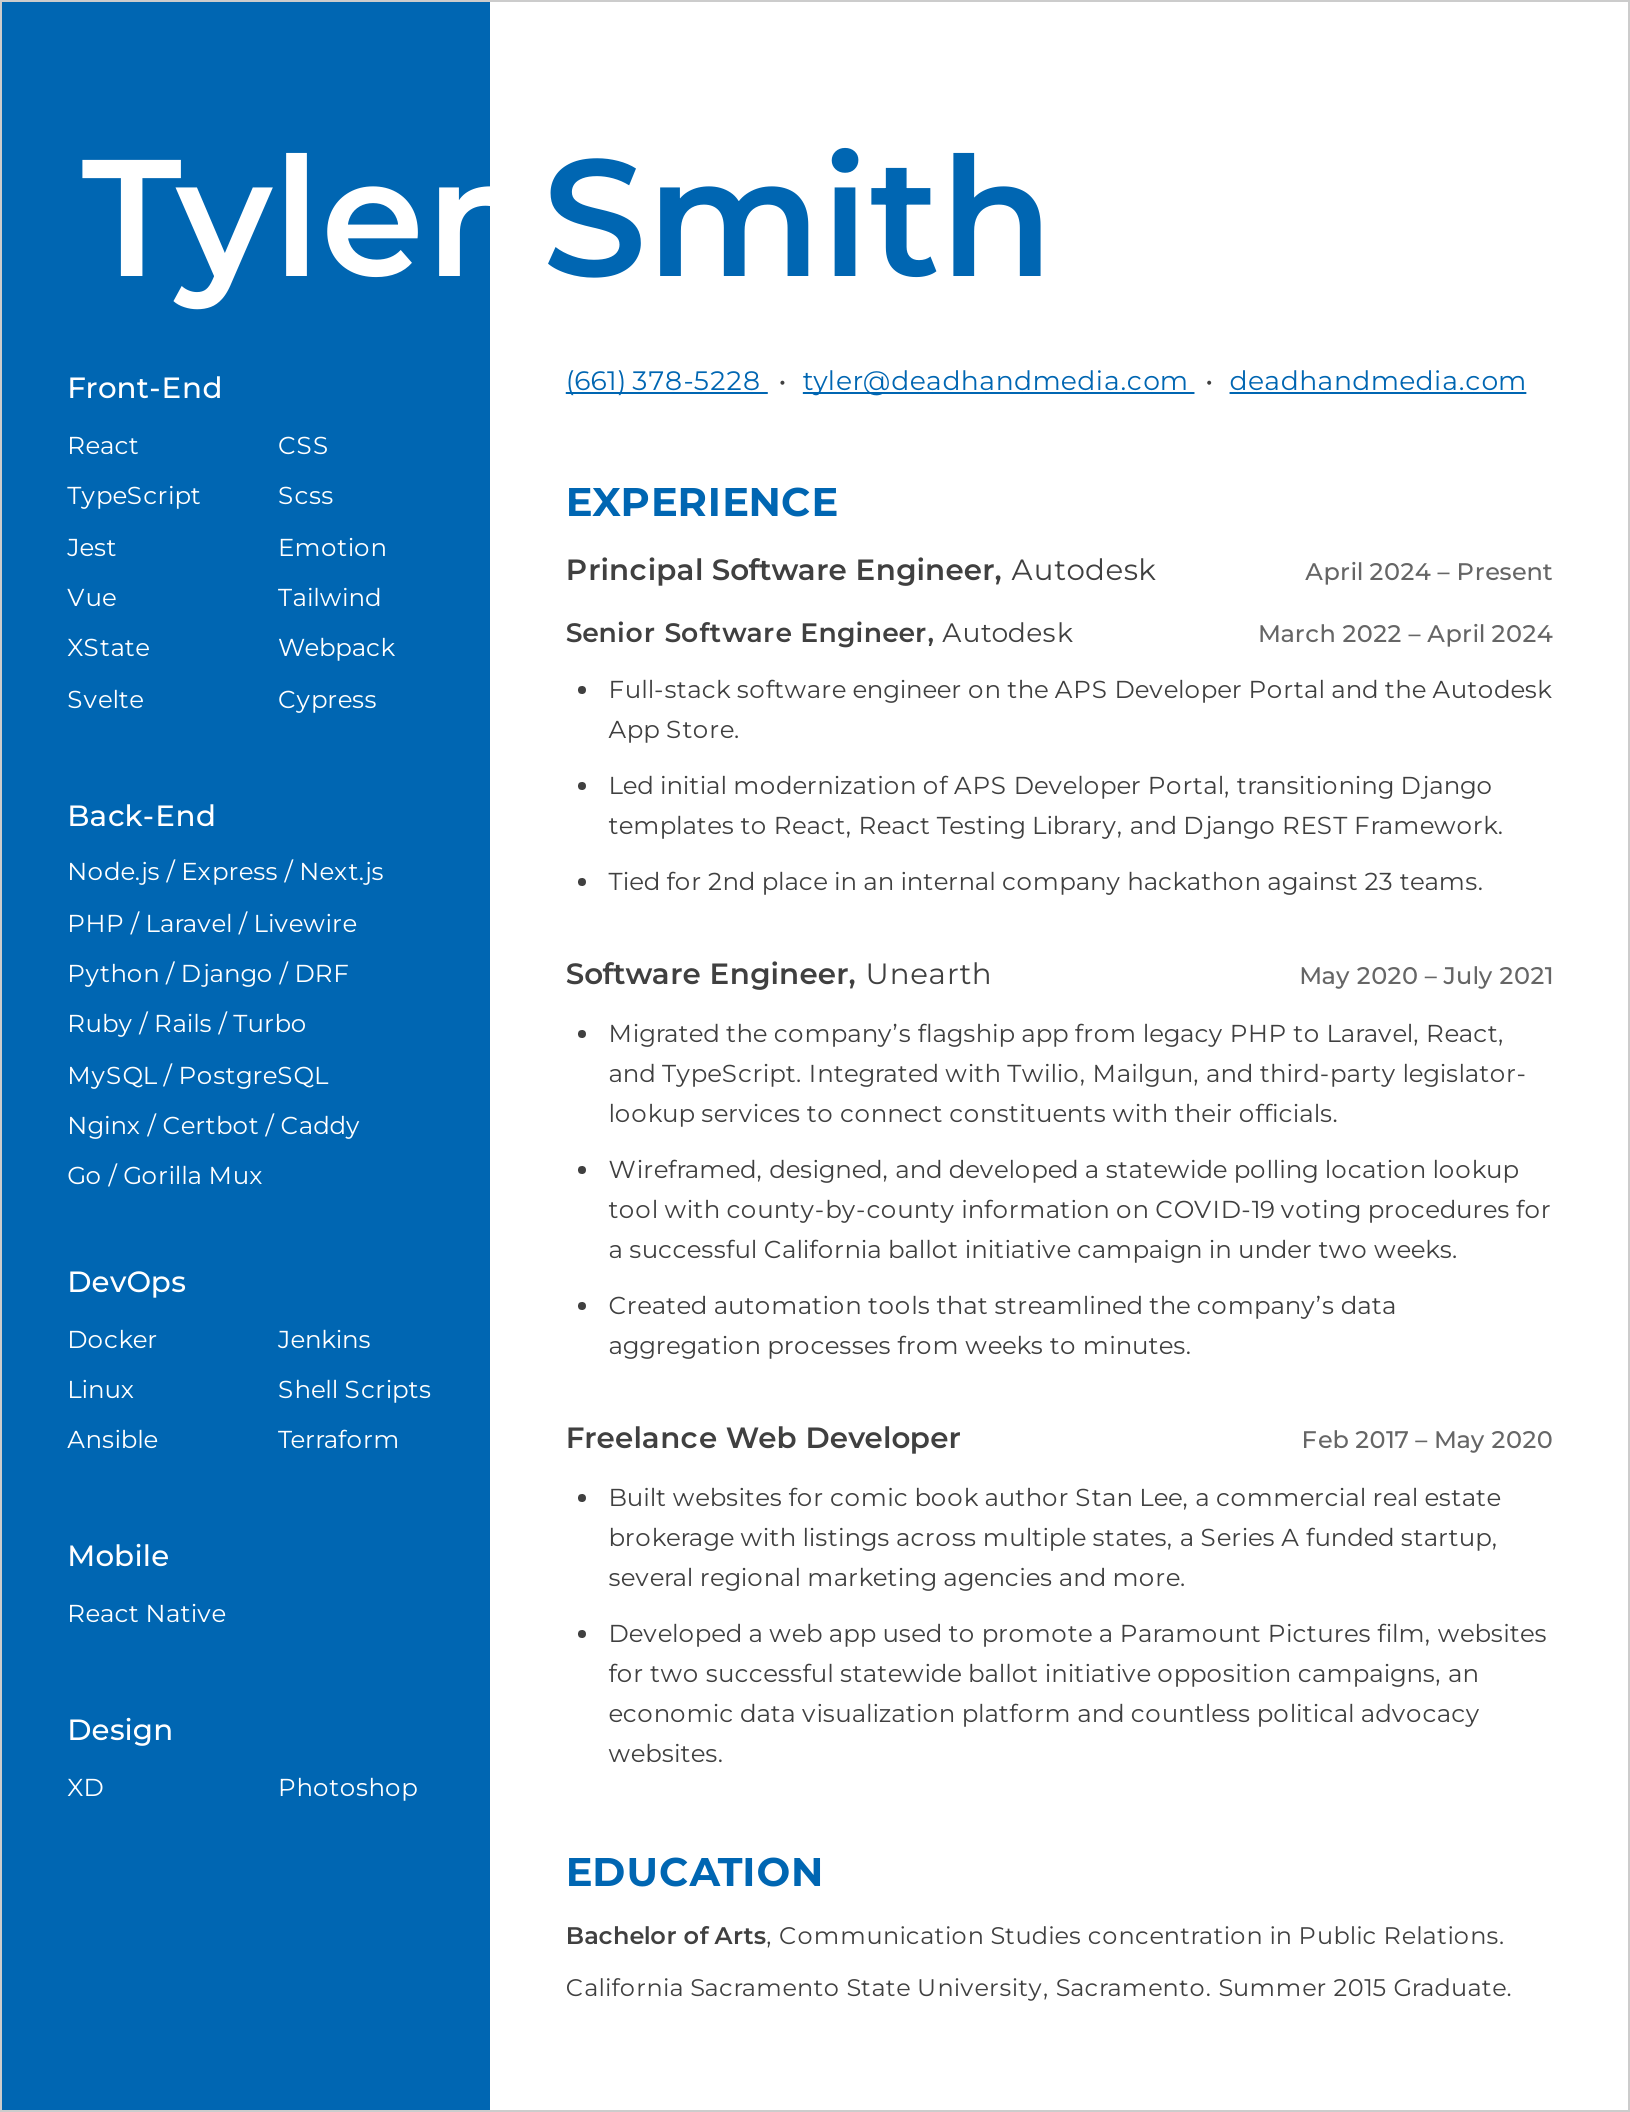 Tyler's resume